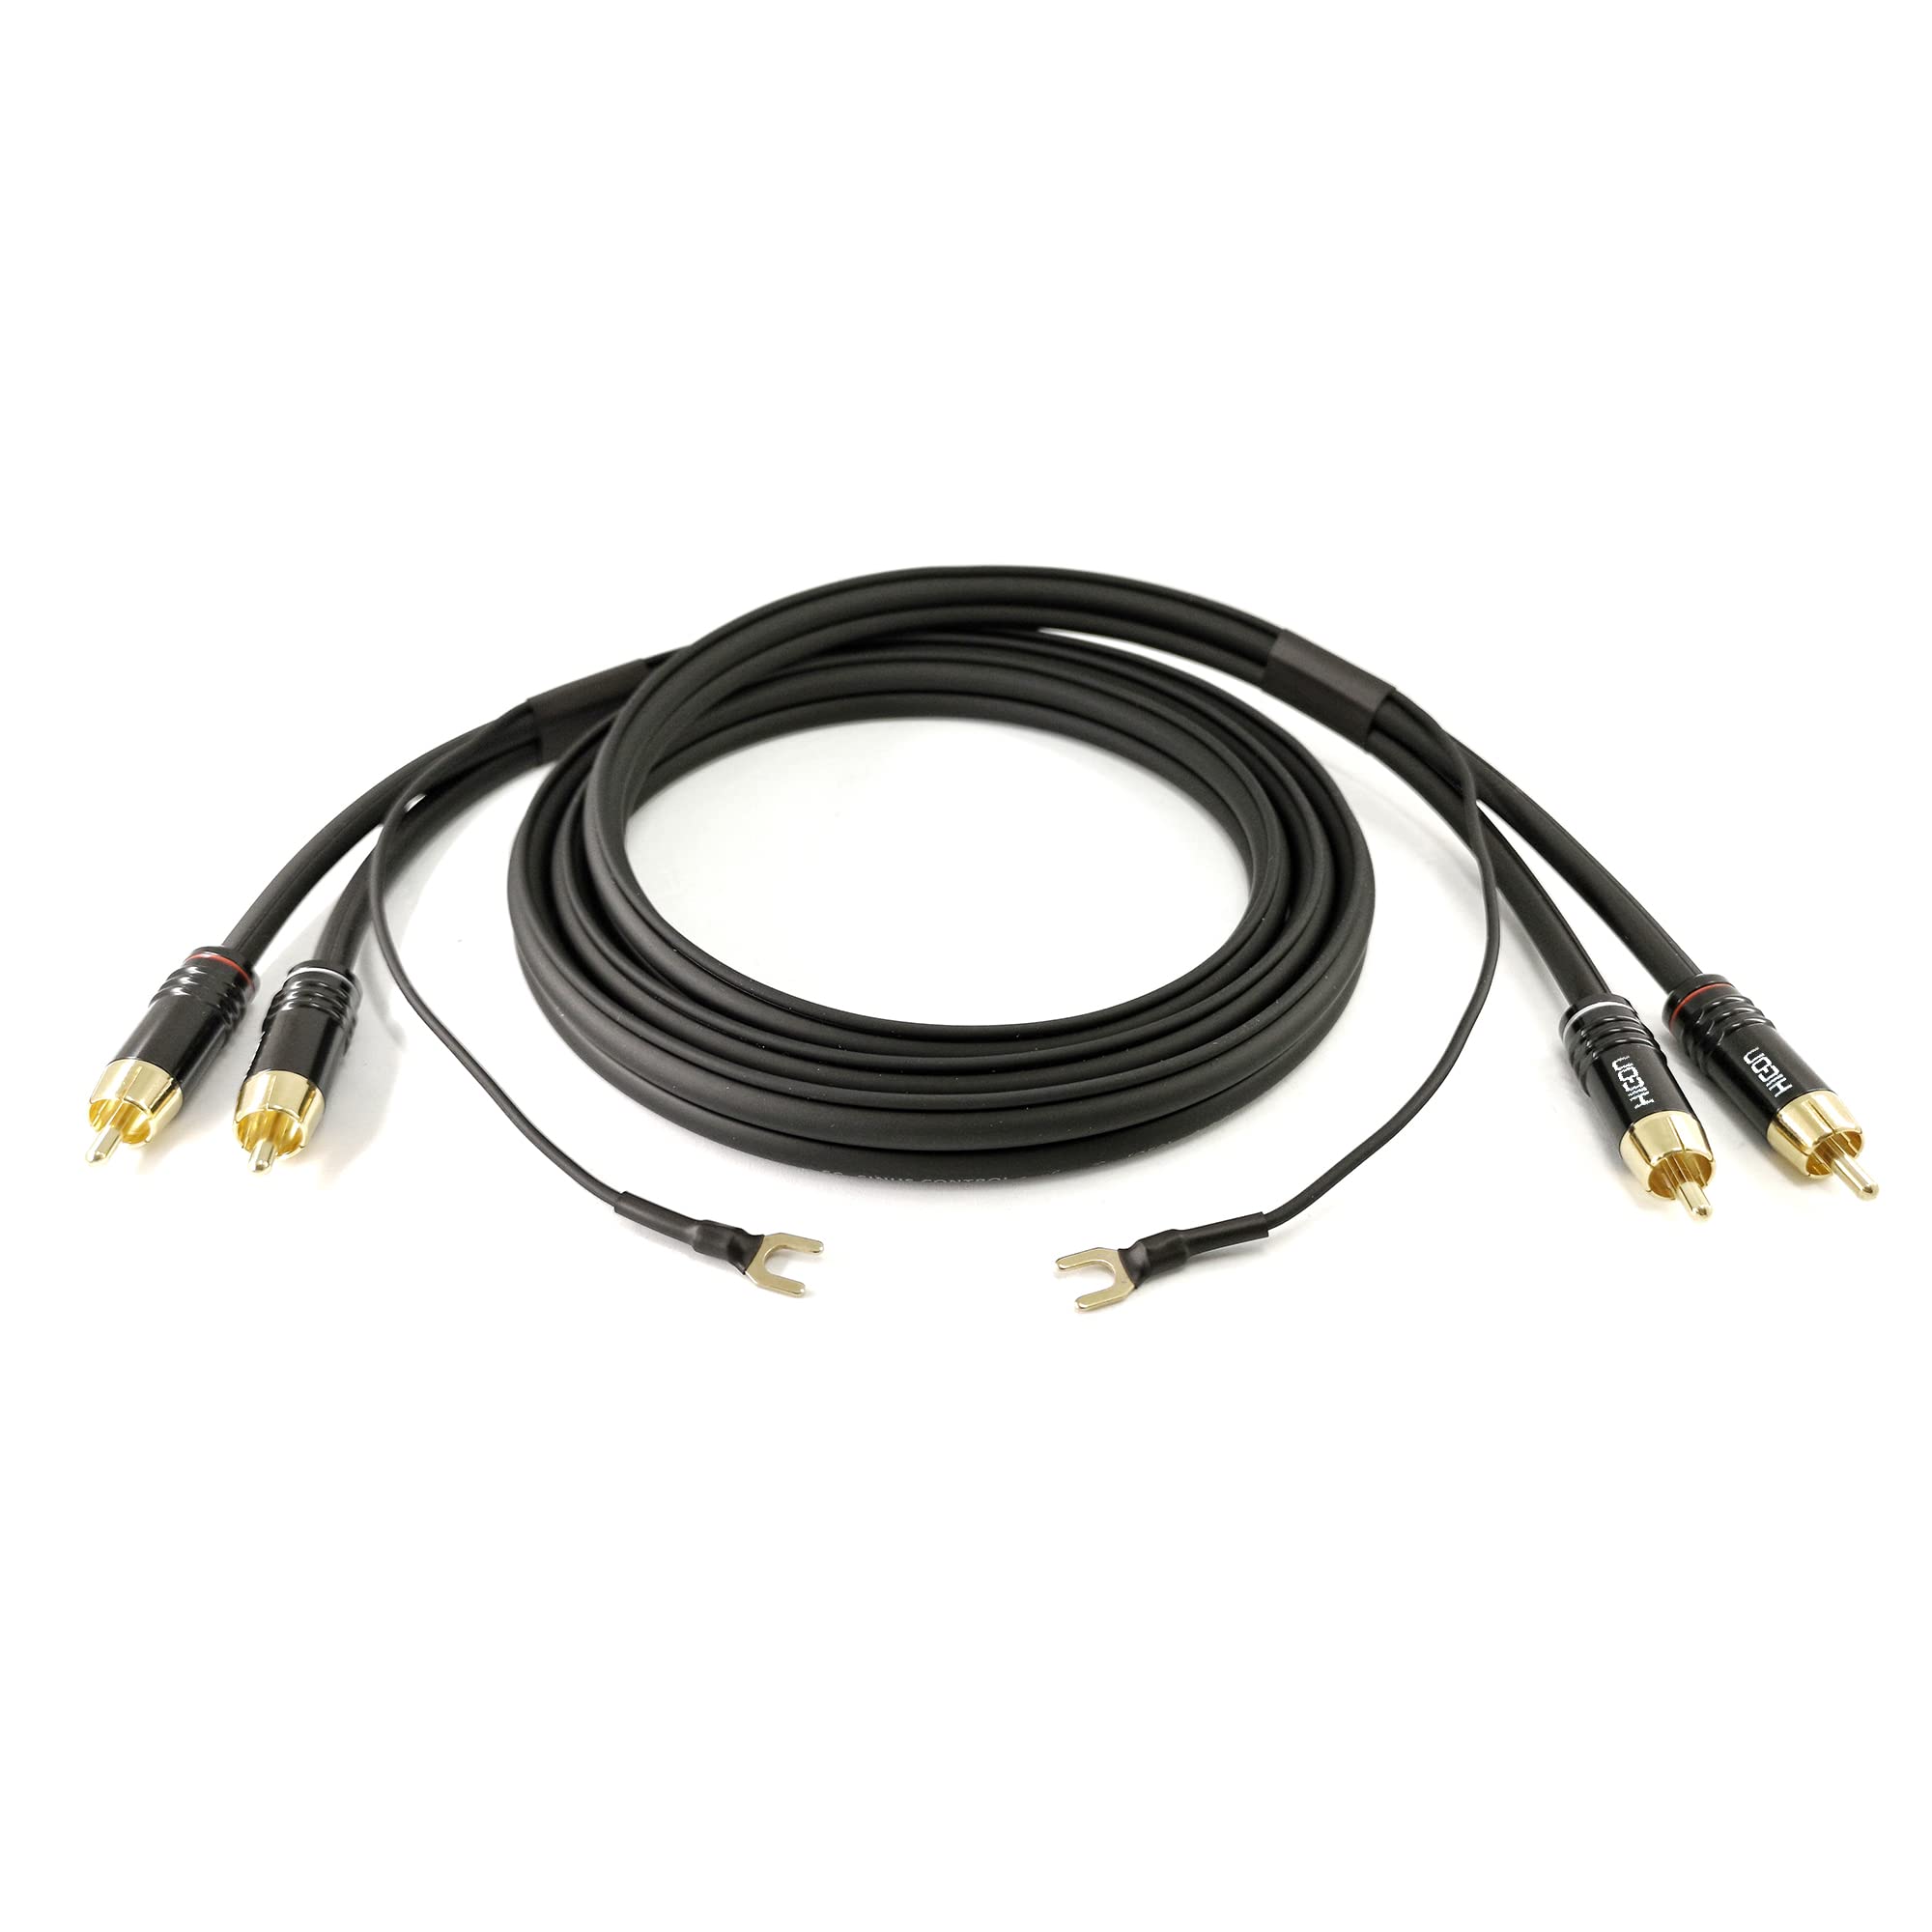 Selected Cable 7m NF- Phonokabel geschirmt Stereo OFC 3x 0,35mm² RCA- Cinchkabel extra 7,1m lange Masseleitung für Verstärker GND Anschluß - SC81-K3-BLK-0700